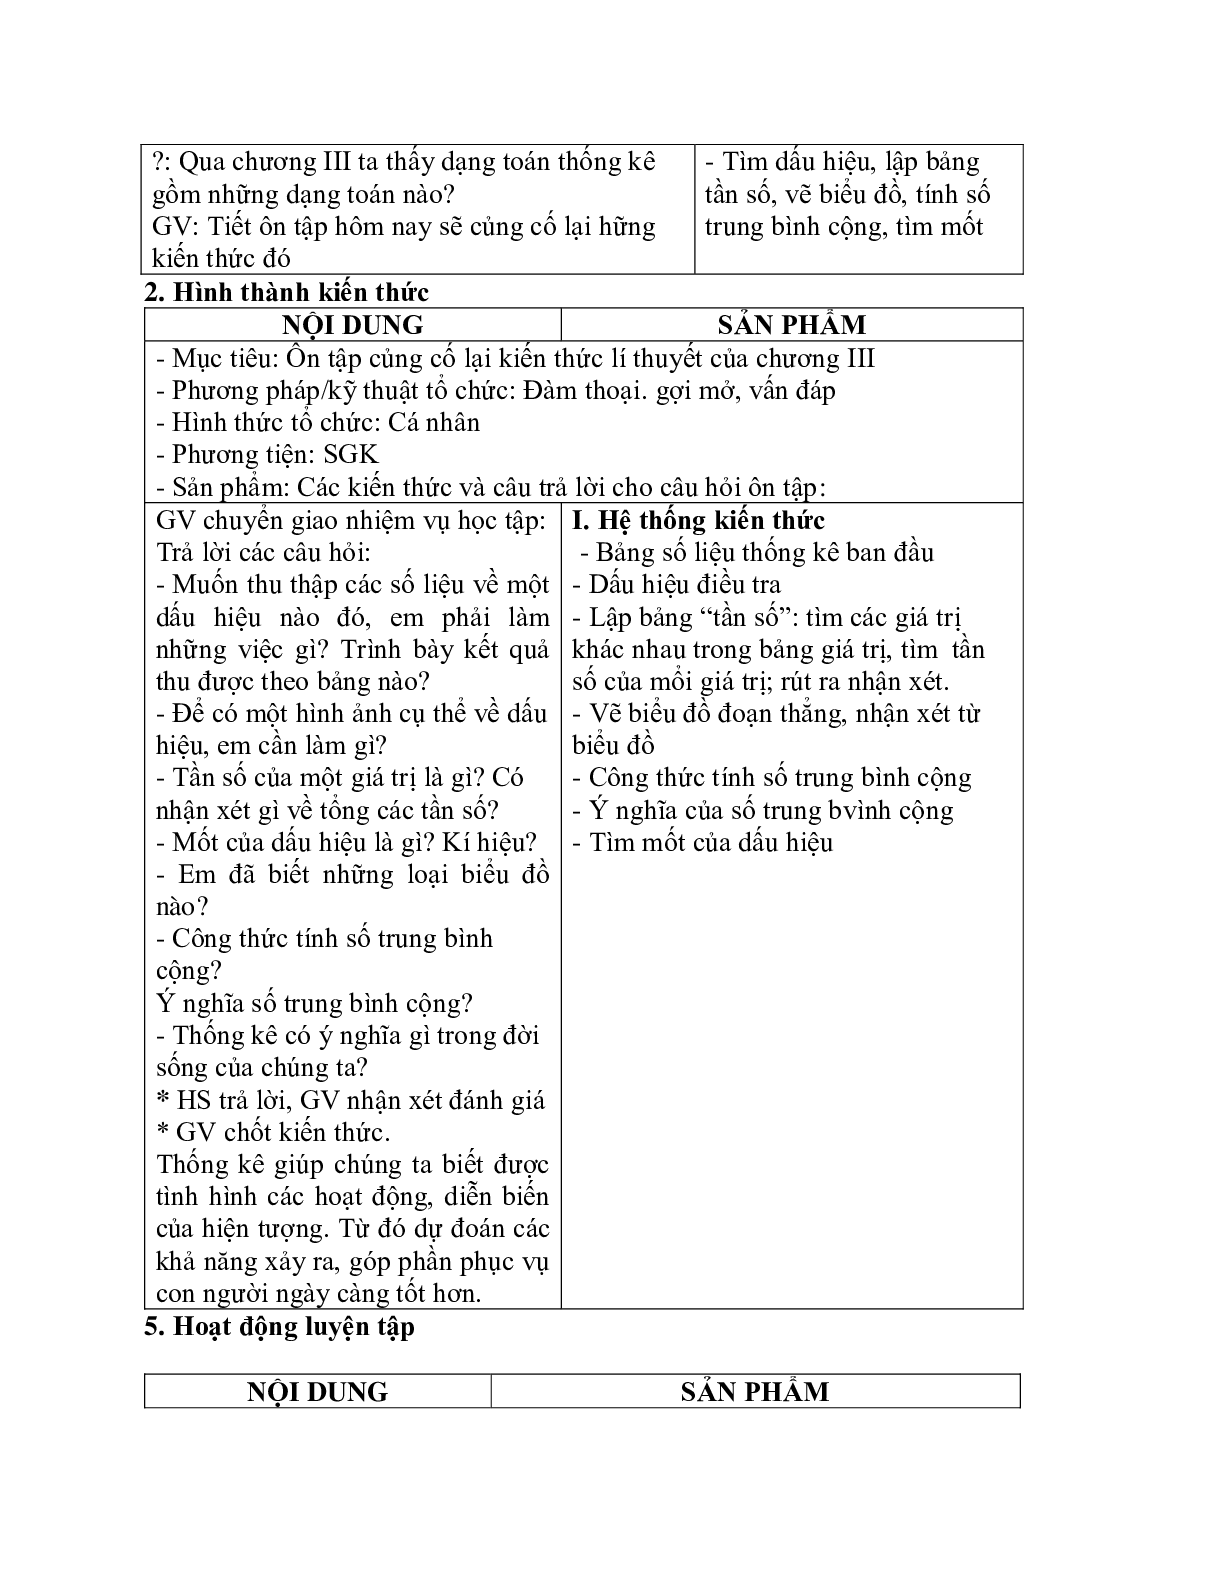 Giáo án Toán học 7: Ôn tập chương 3 chuẩn nhất (trang 2)